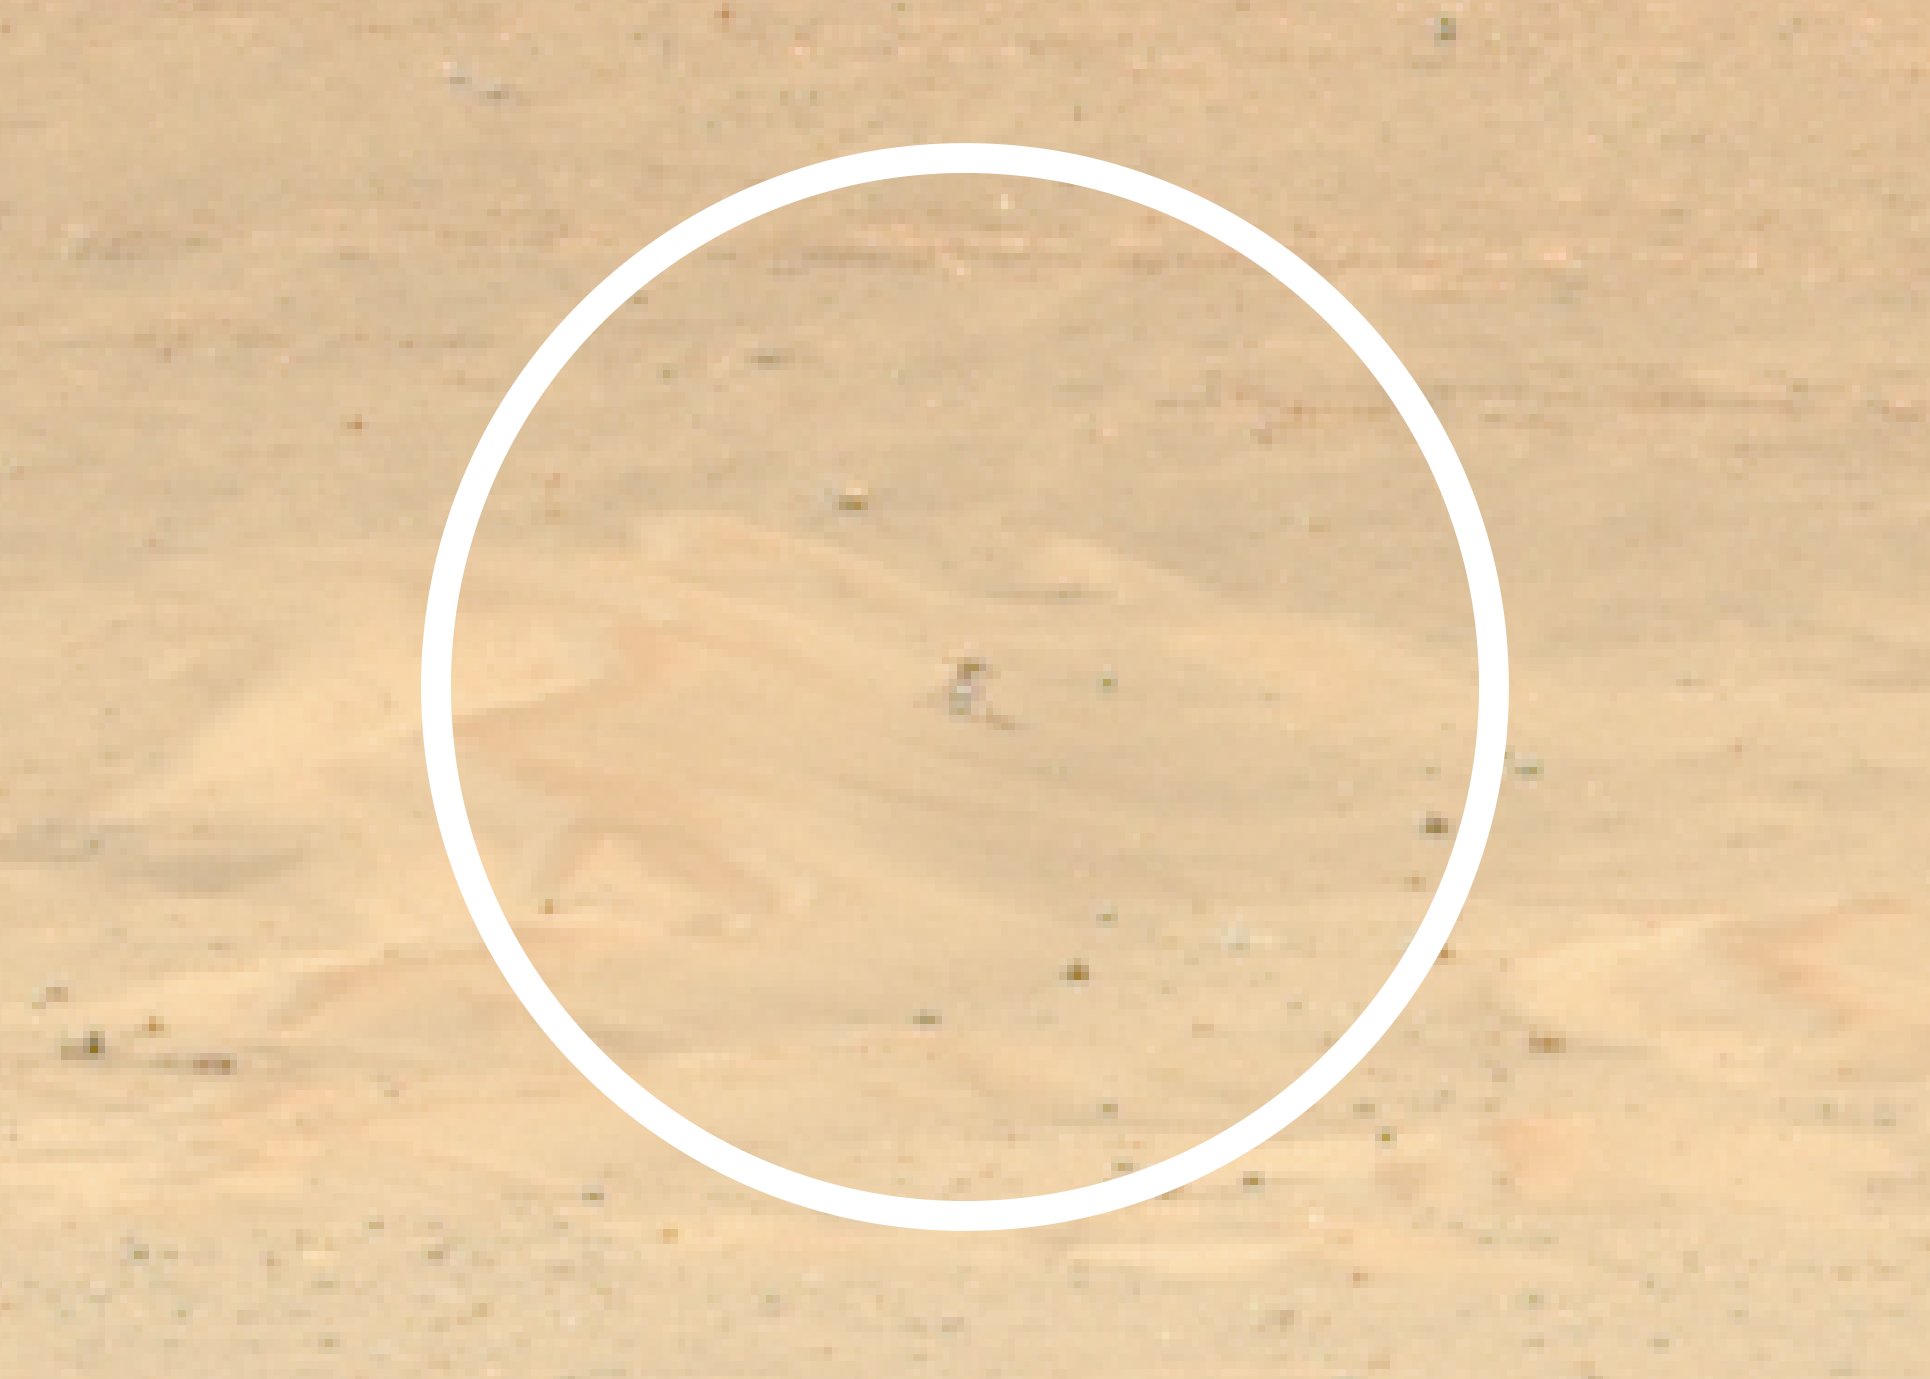 Una vista ampliada del helicóptero Ingenuity Mars de la NASA tomada por el rover Perseverance de la agencia.  El equipo del rover publicó esta foto en Twitter el 11 de enero de 2023.